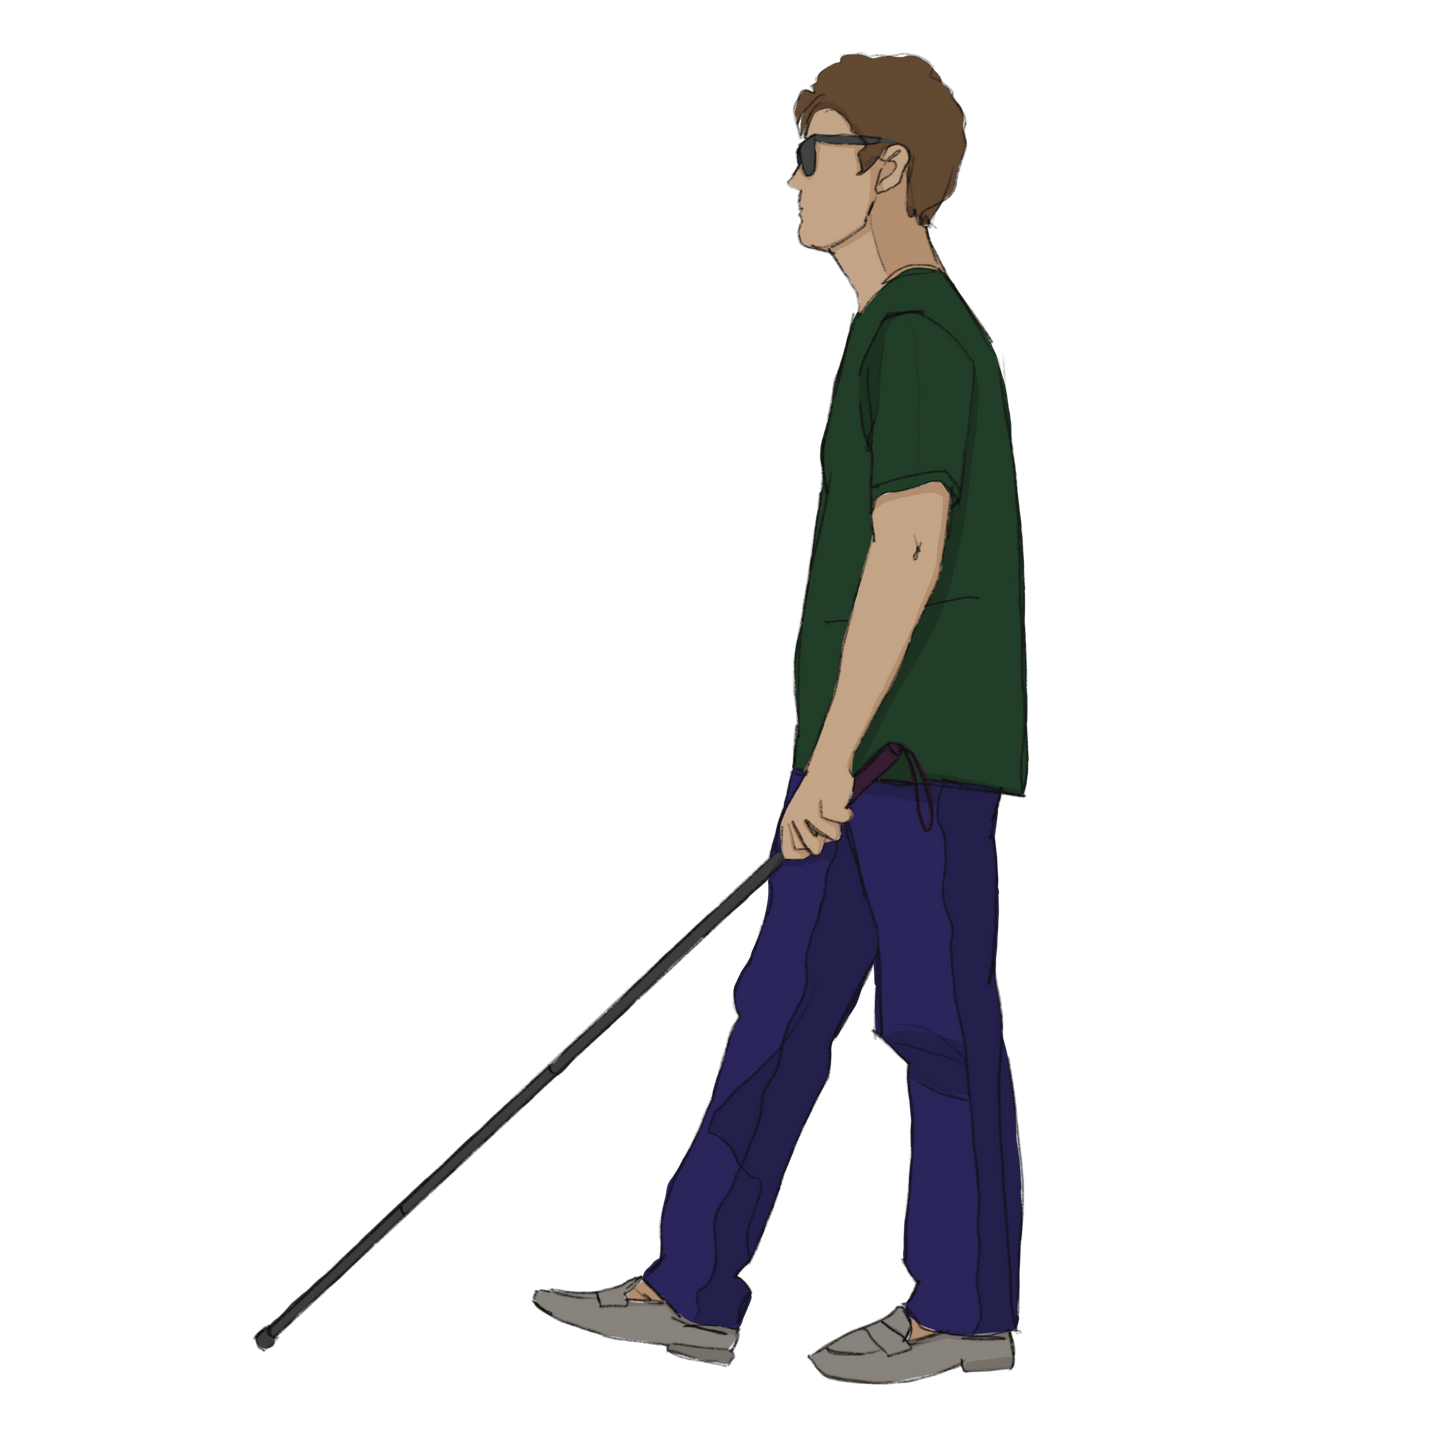 blind human walking